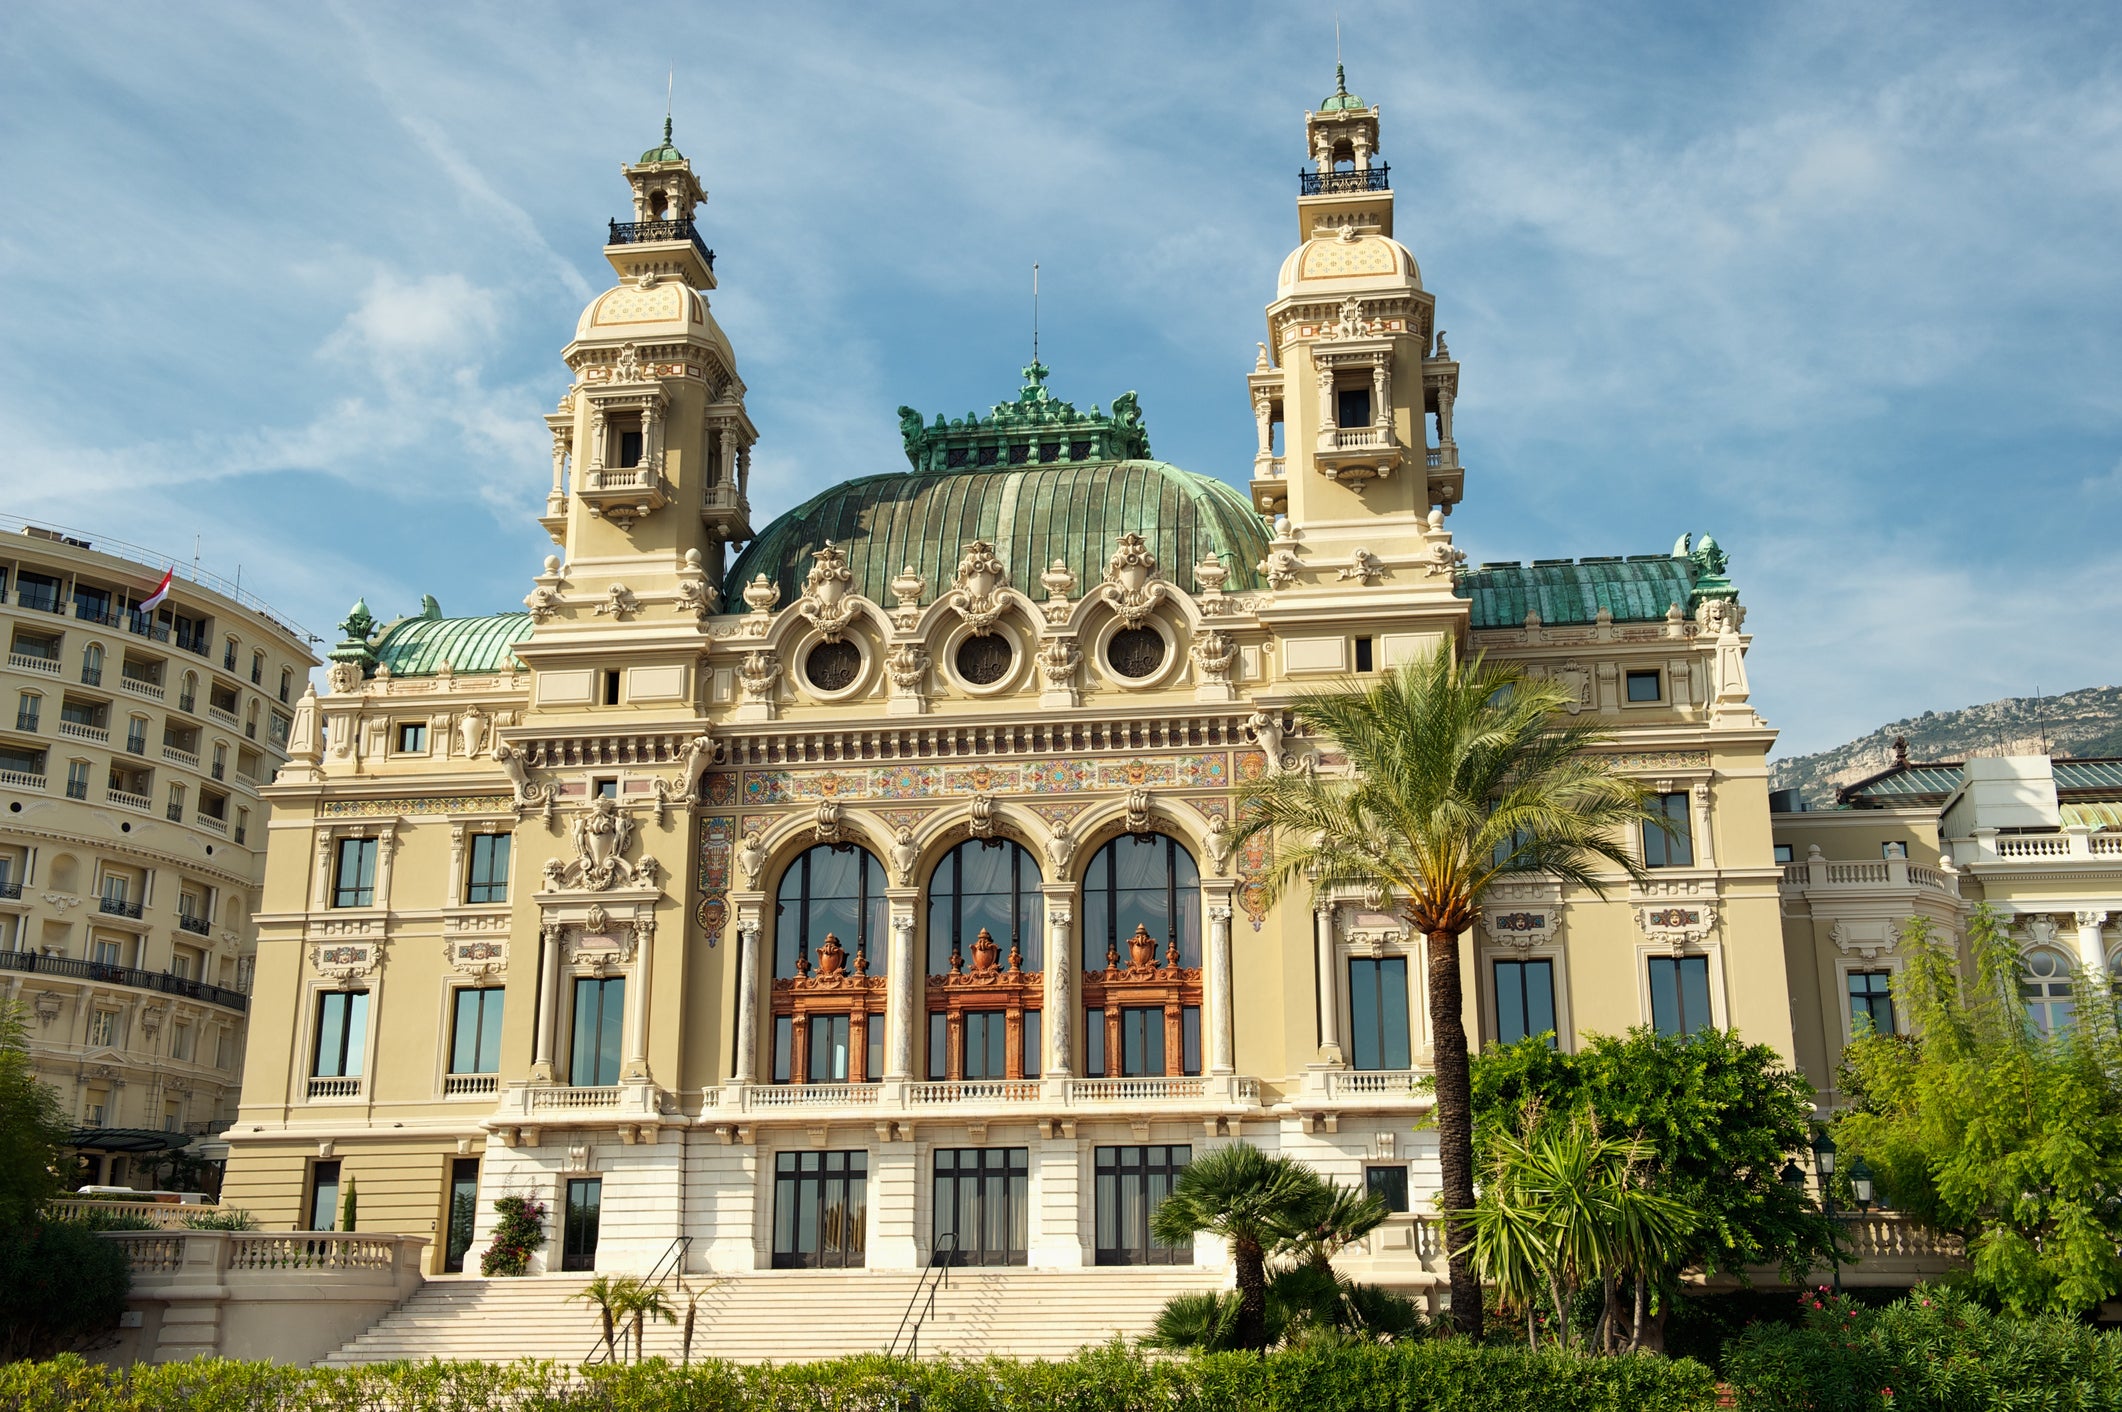 The majestic Monte Carlo Casino, officially the Casino de Monte-Carlo, is known across the world